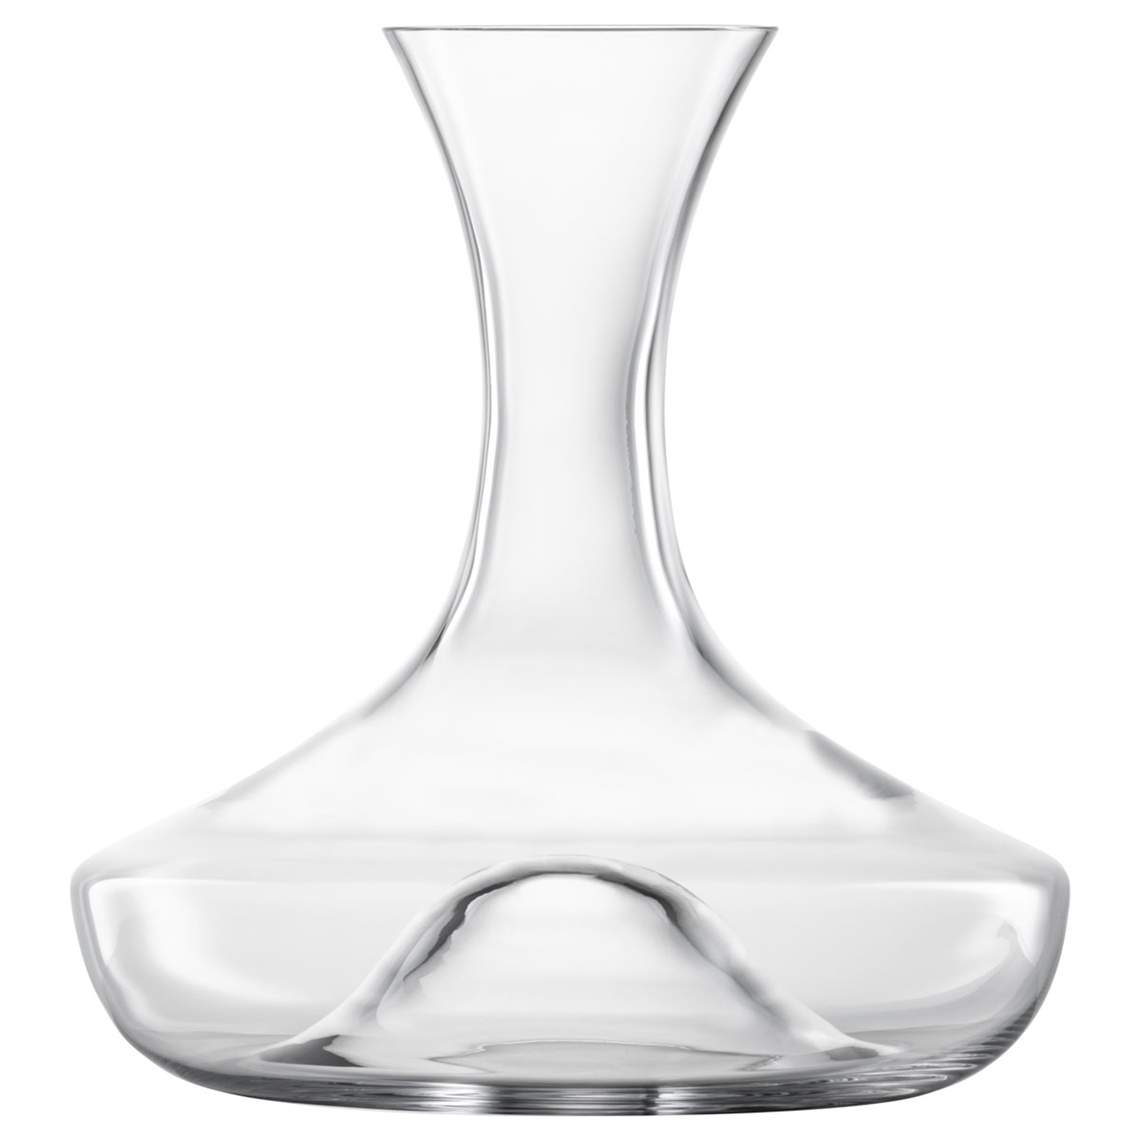 Eisch Glas Crystal Celebration Wine Decanter 1.5L